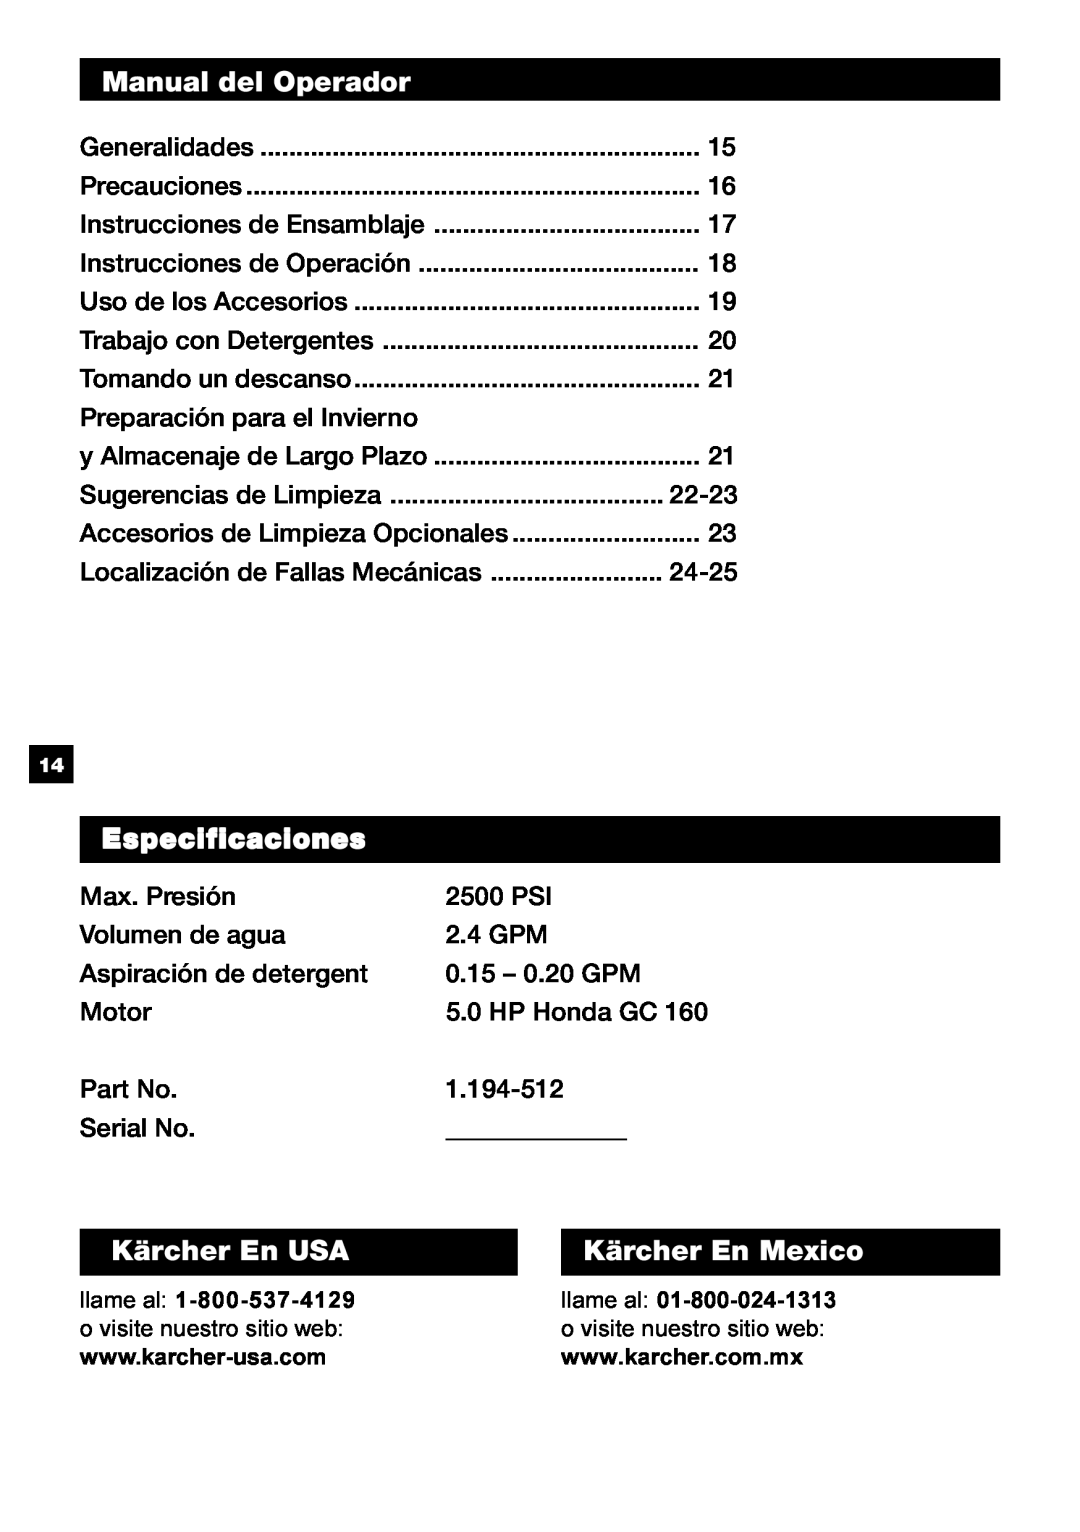 Karcher G 2500 OH manual Manual del Operador, Especificaciones, Kärcher En USA, Kärcher En Mexico 